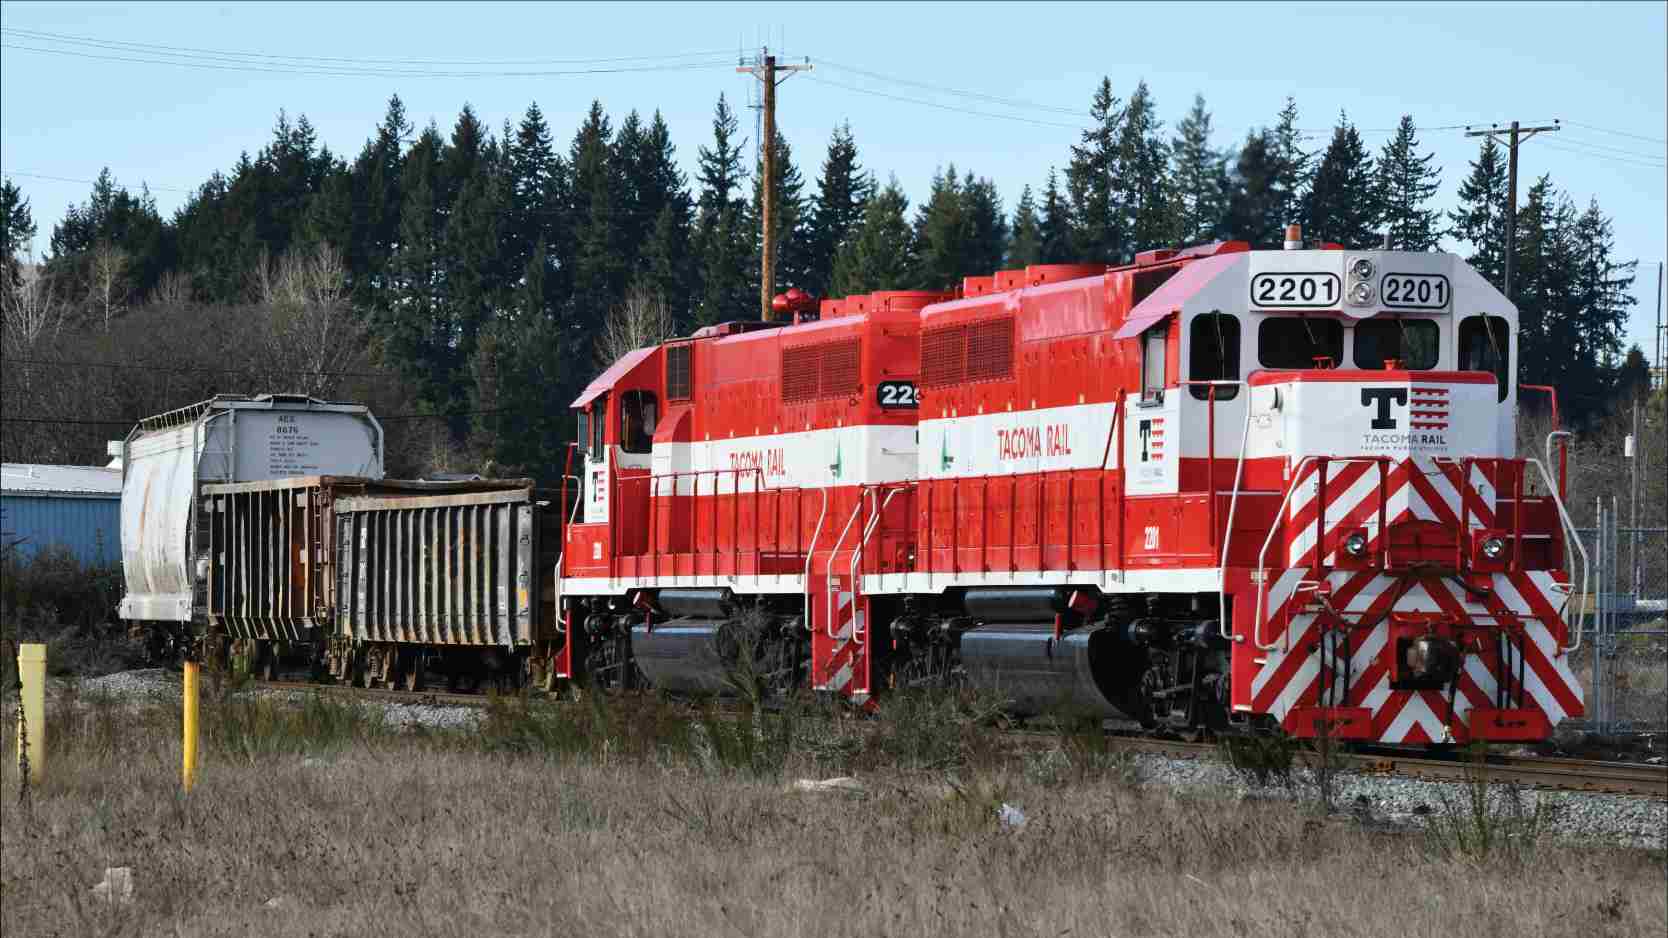 Texcan - Industries - Transportation - Railroads